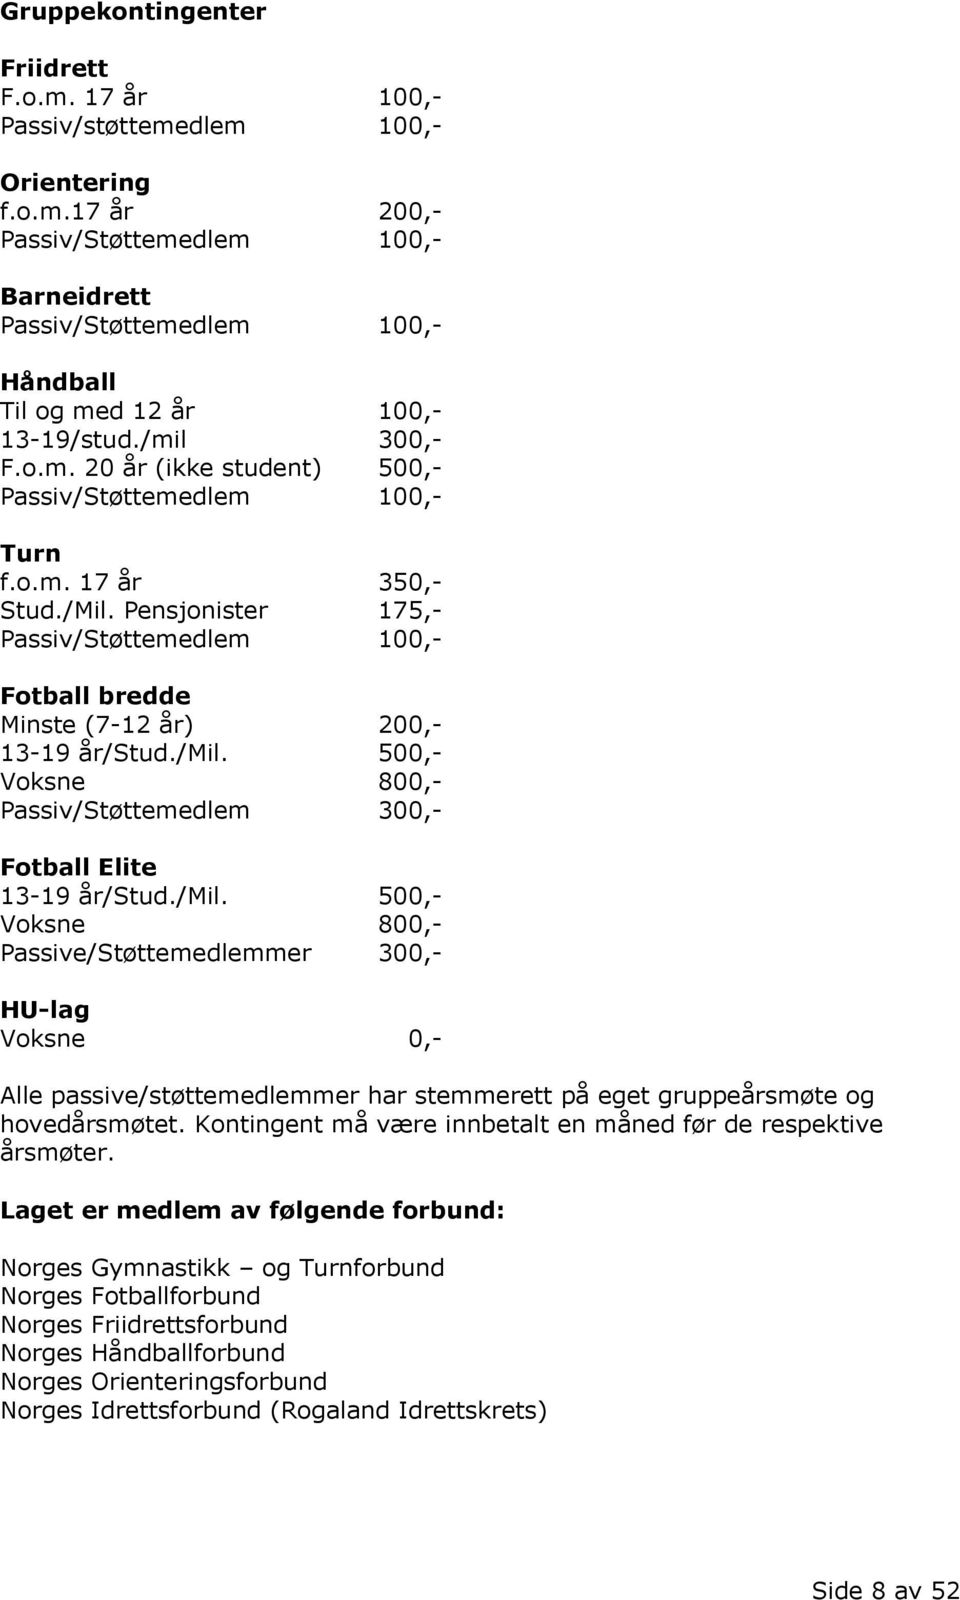 Pensjonister 175,- Passiv/Støttemedlem 100,- Fotball bredde Minste (7-12 år) 200,- 13-19 år/stud./mil.